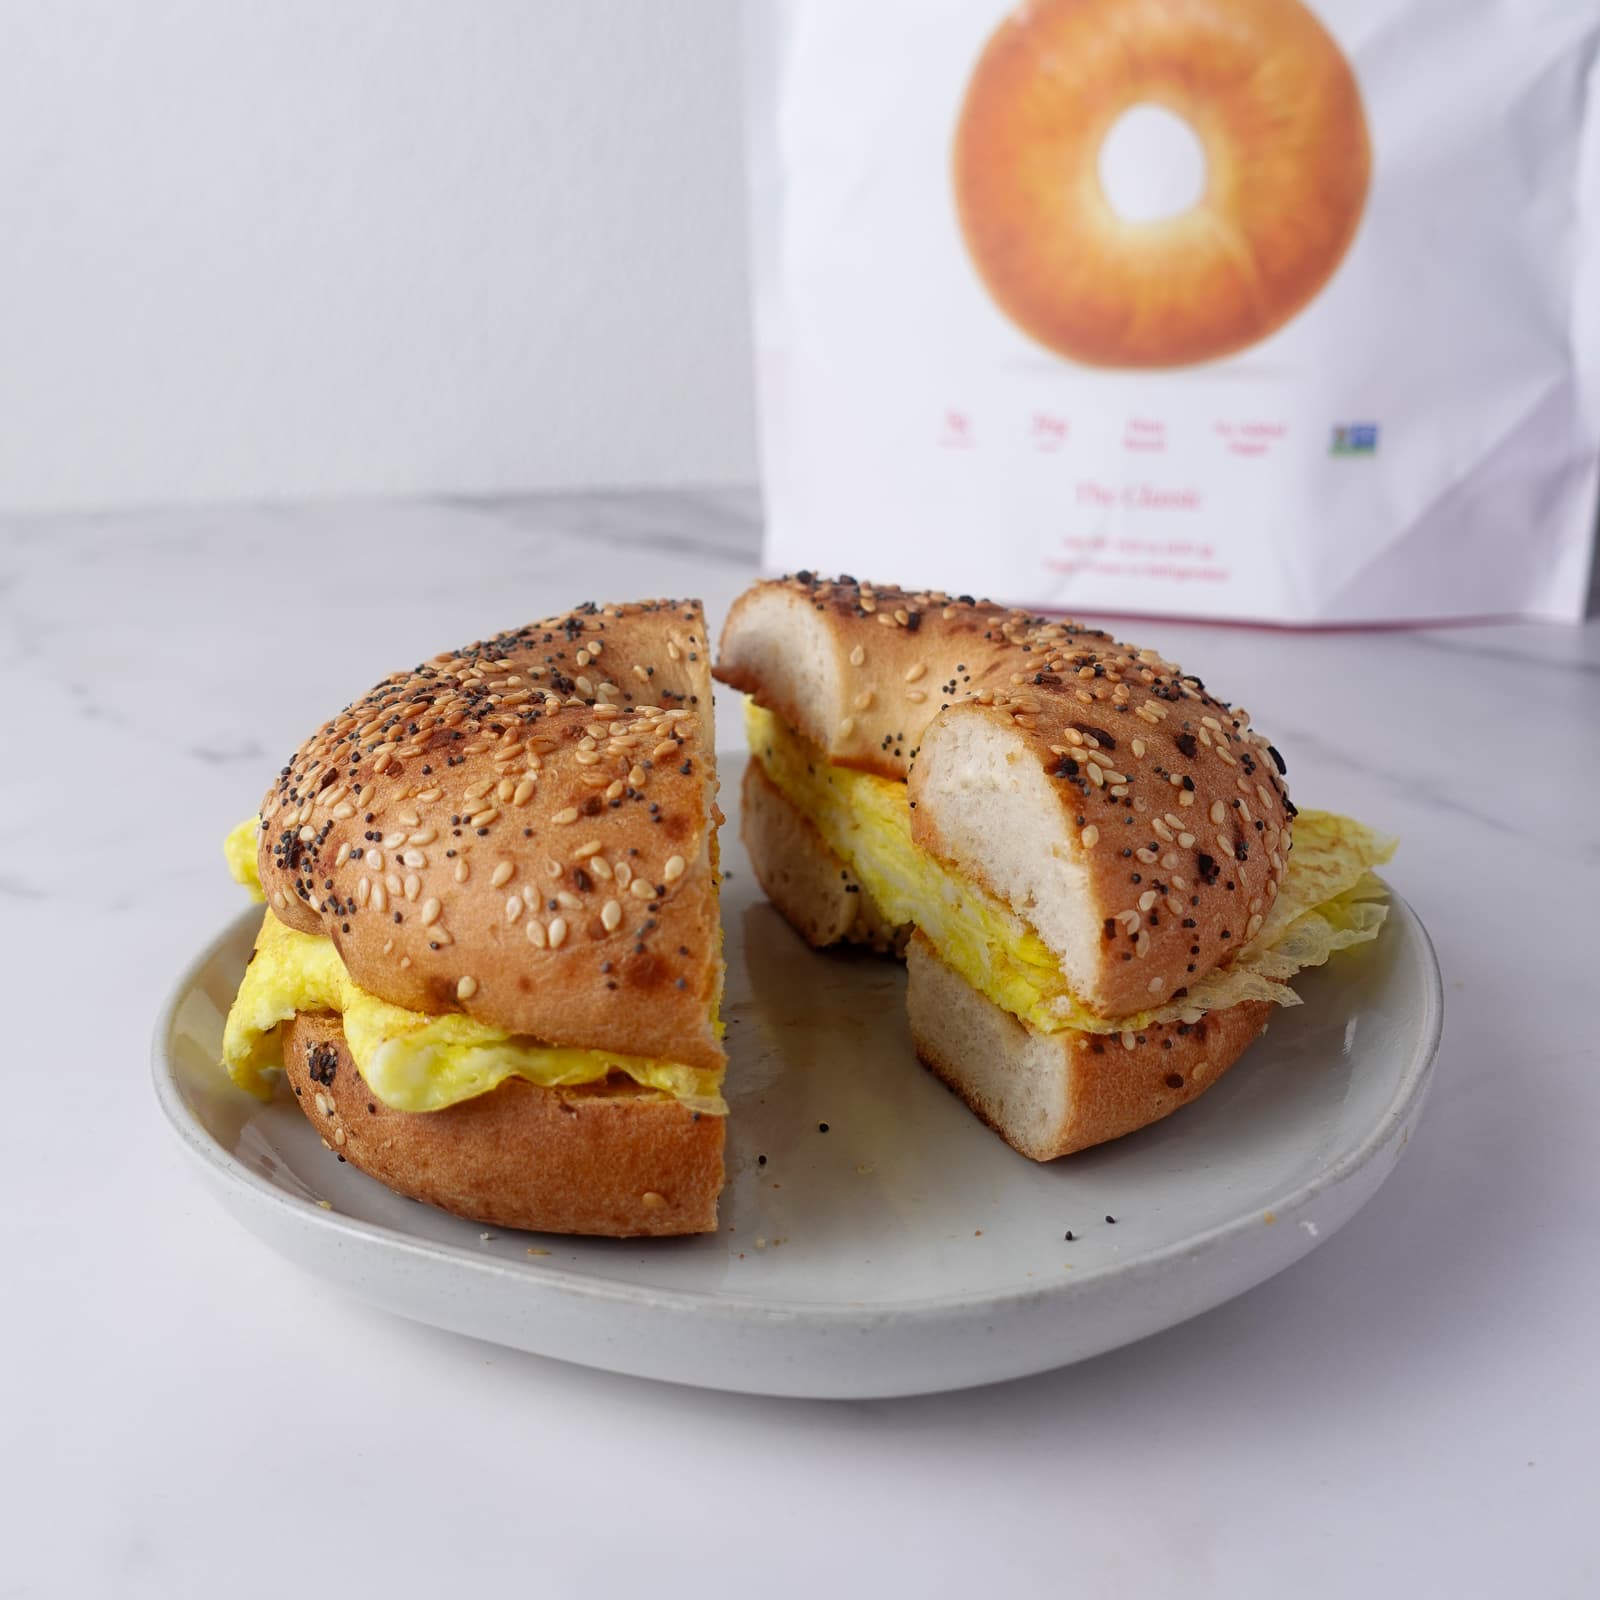 The better bagel breakfast sandwich